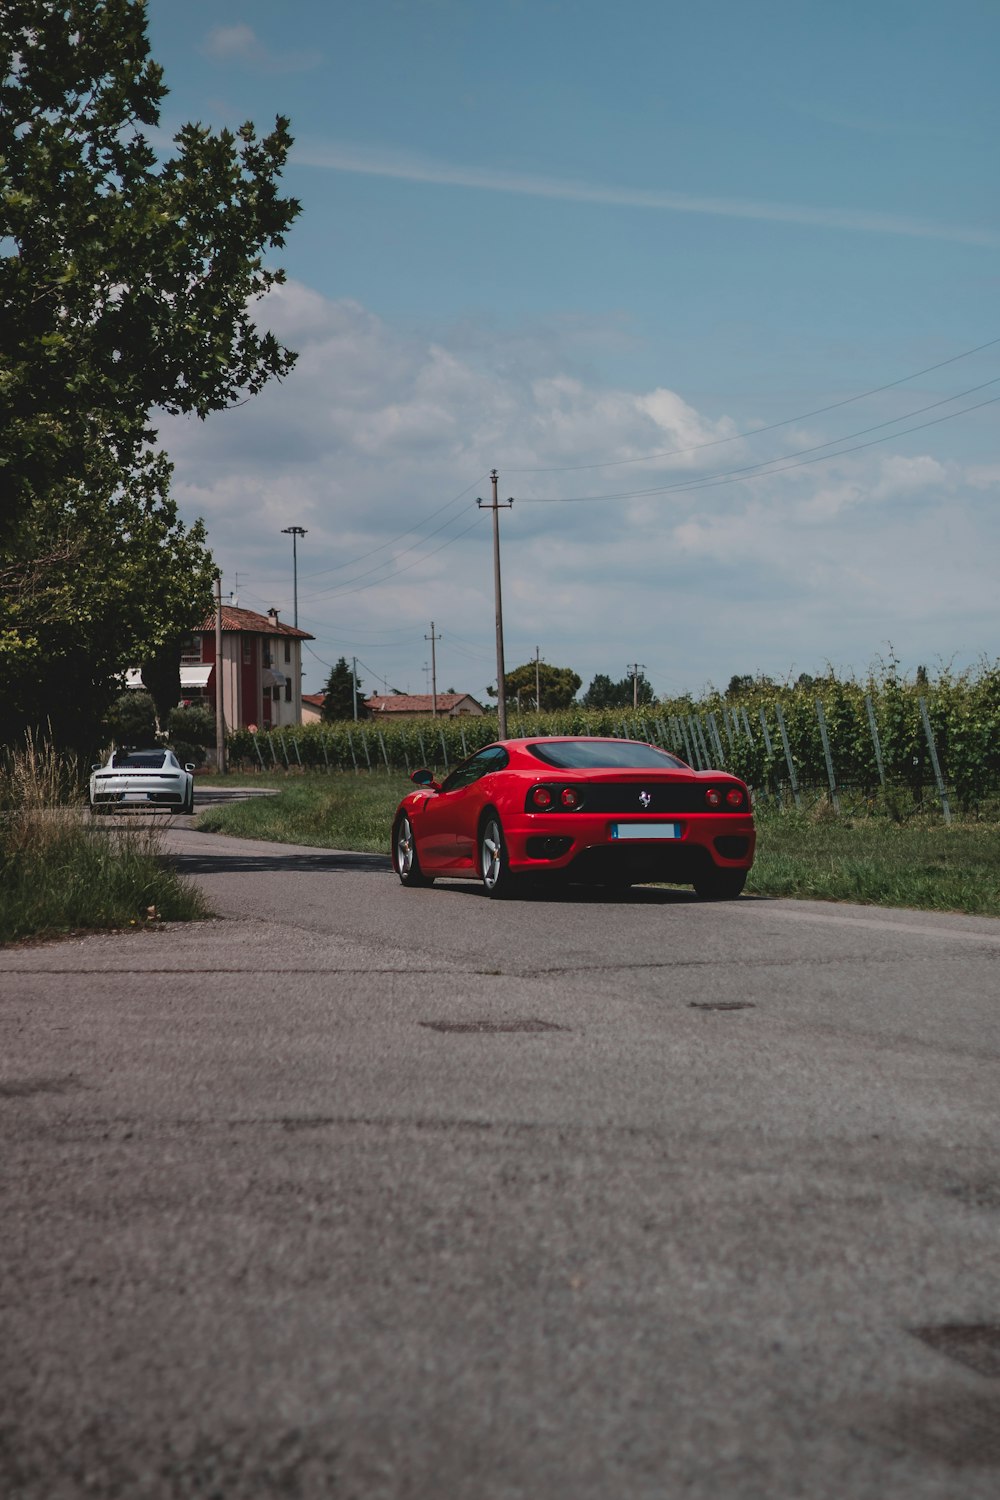 Ferrari coupé rossa su strada durante il giorno